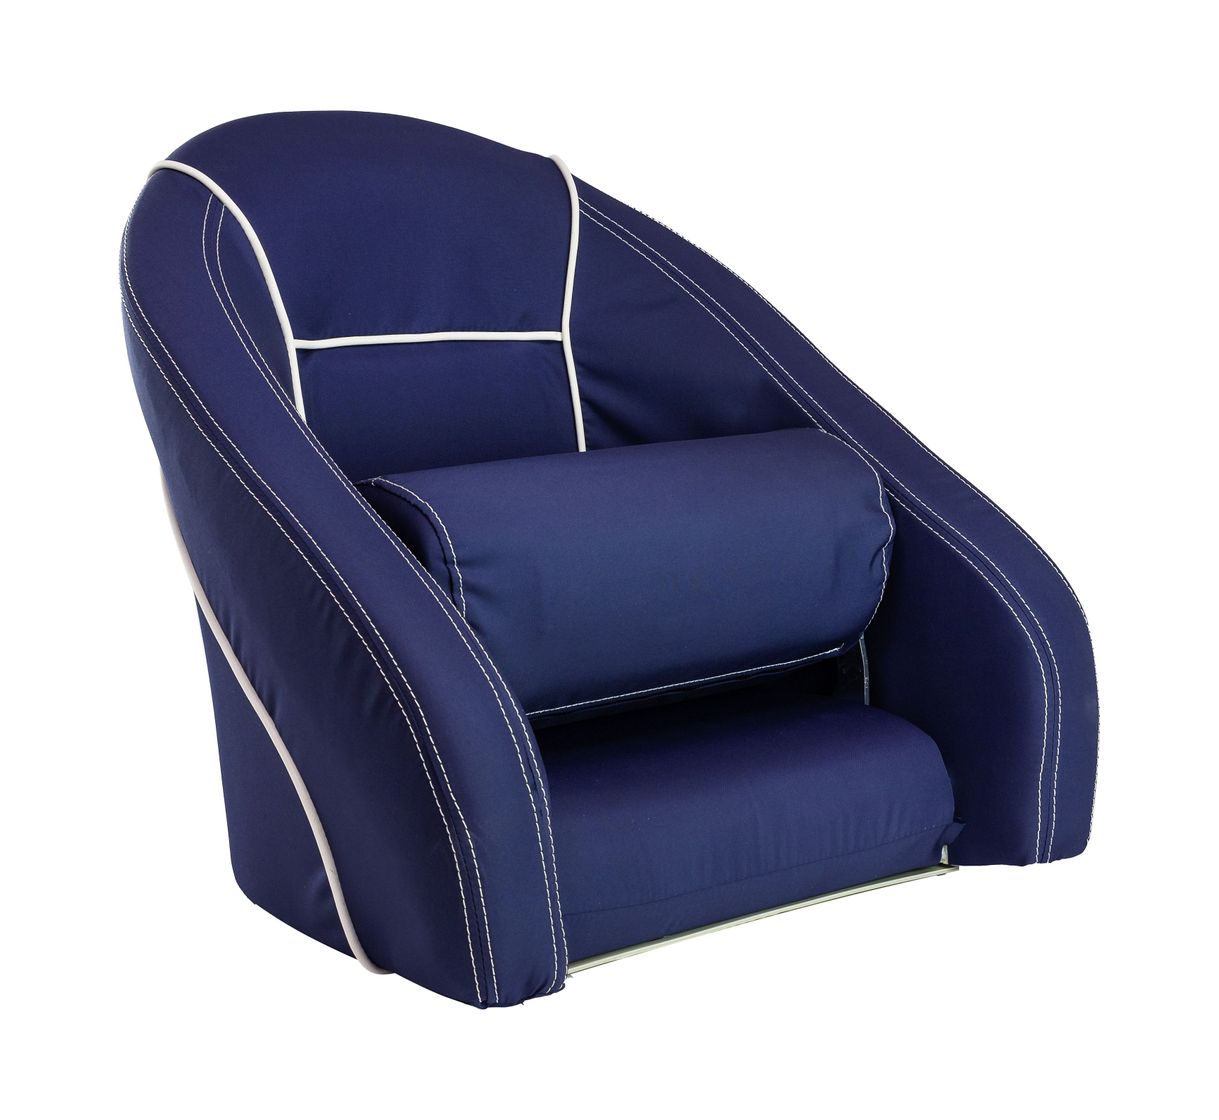 Кресло ROMEO мягкое, подставка, обивка ткань Markilux темно-синяя Springfield 118100395